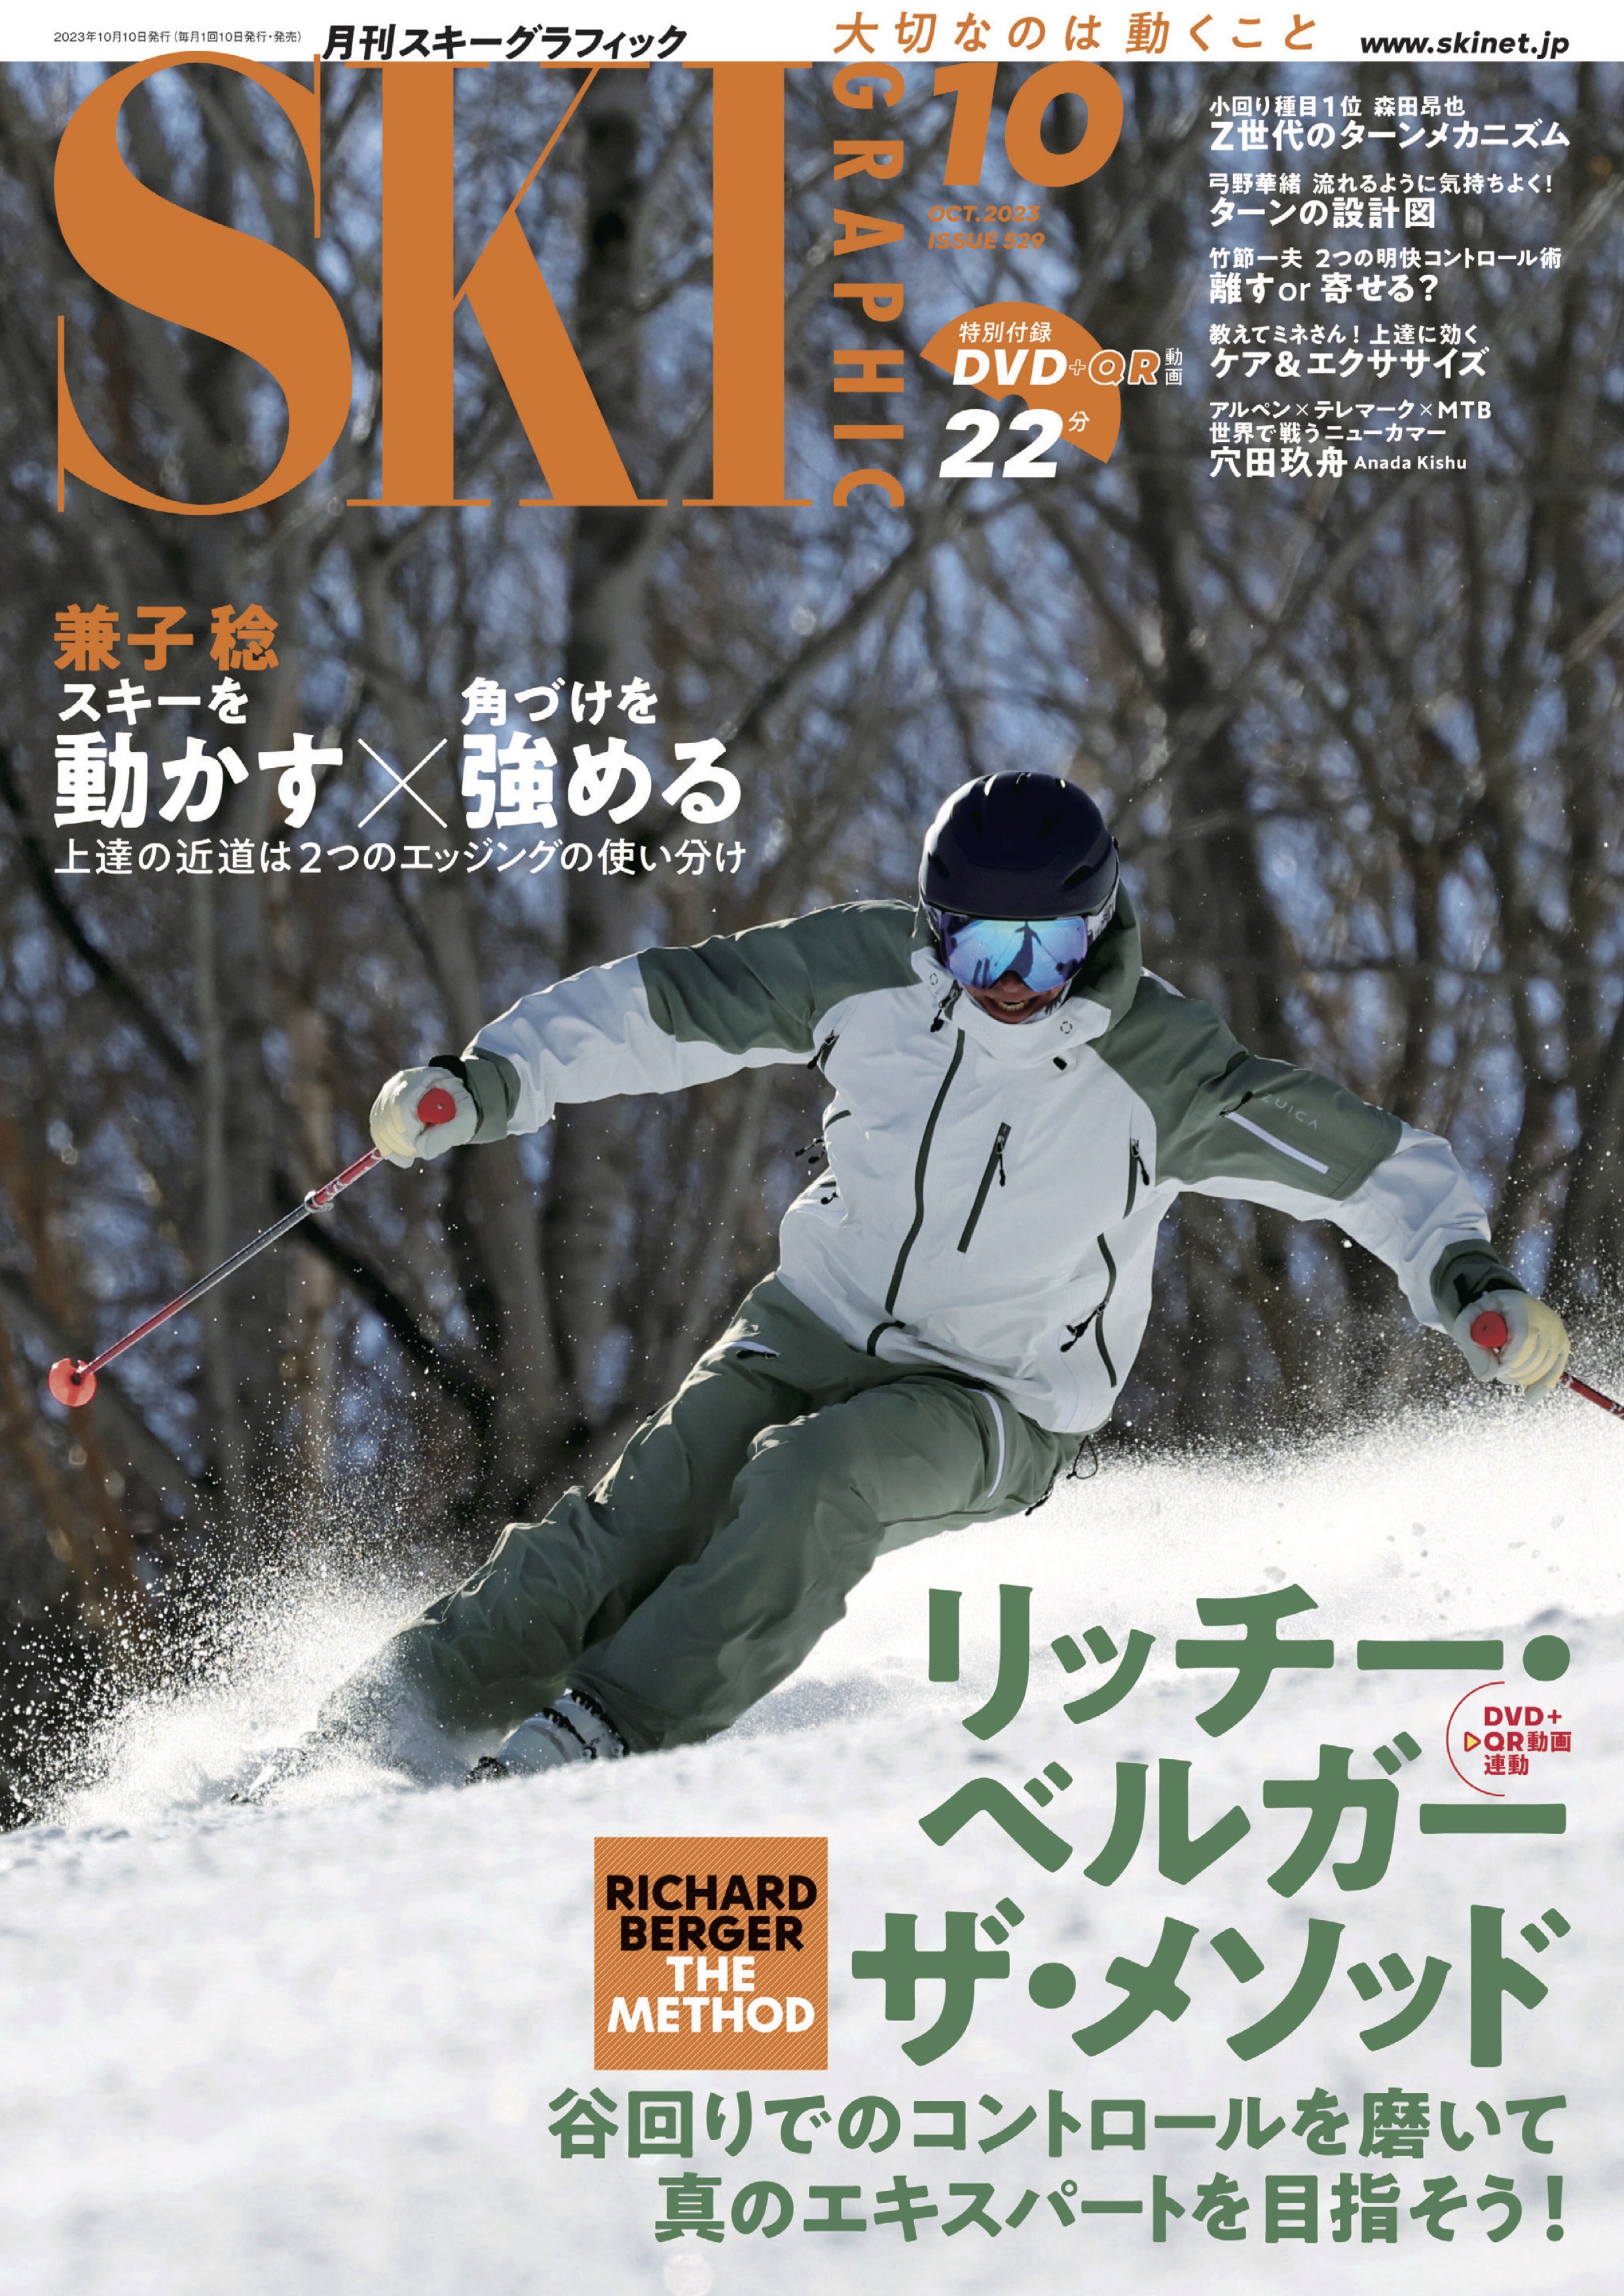 スキーグラフィックNo.529 - スキーグラフィック編集部 - 漫画・ラノベ